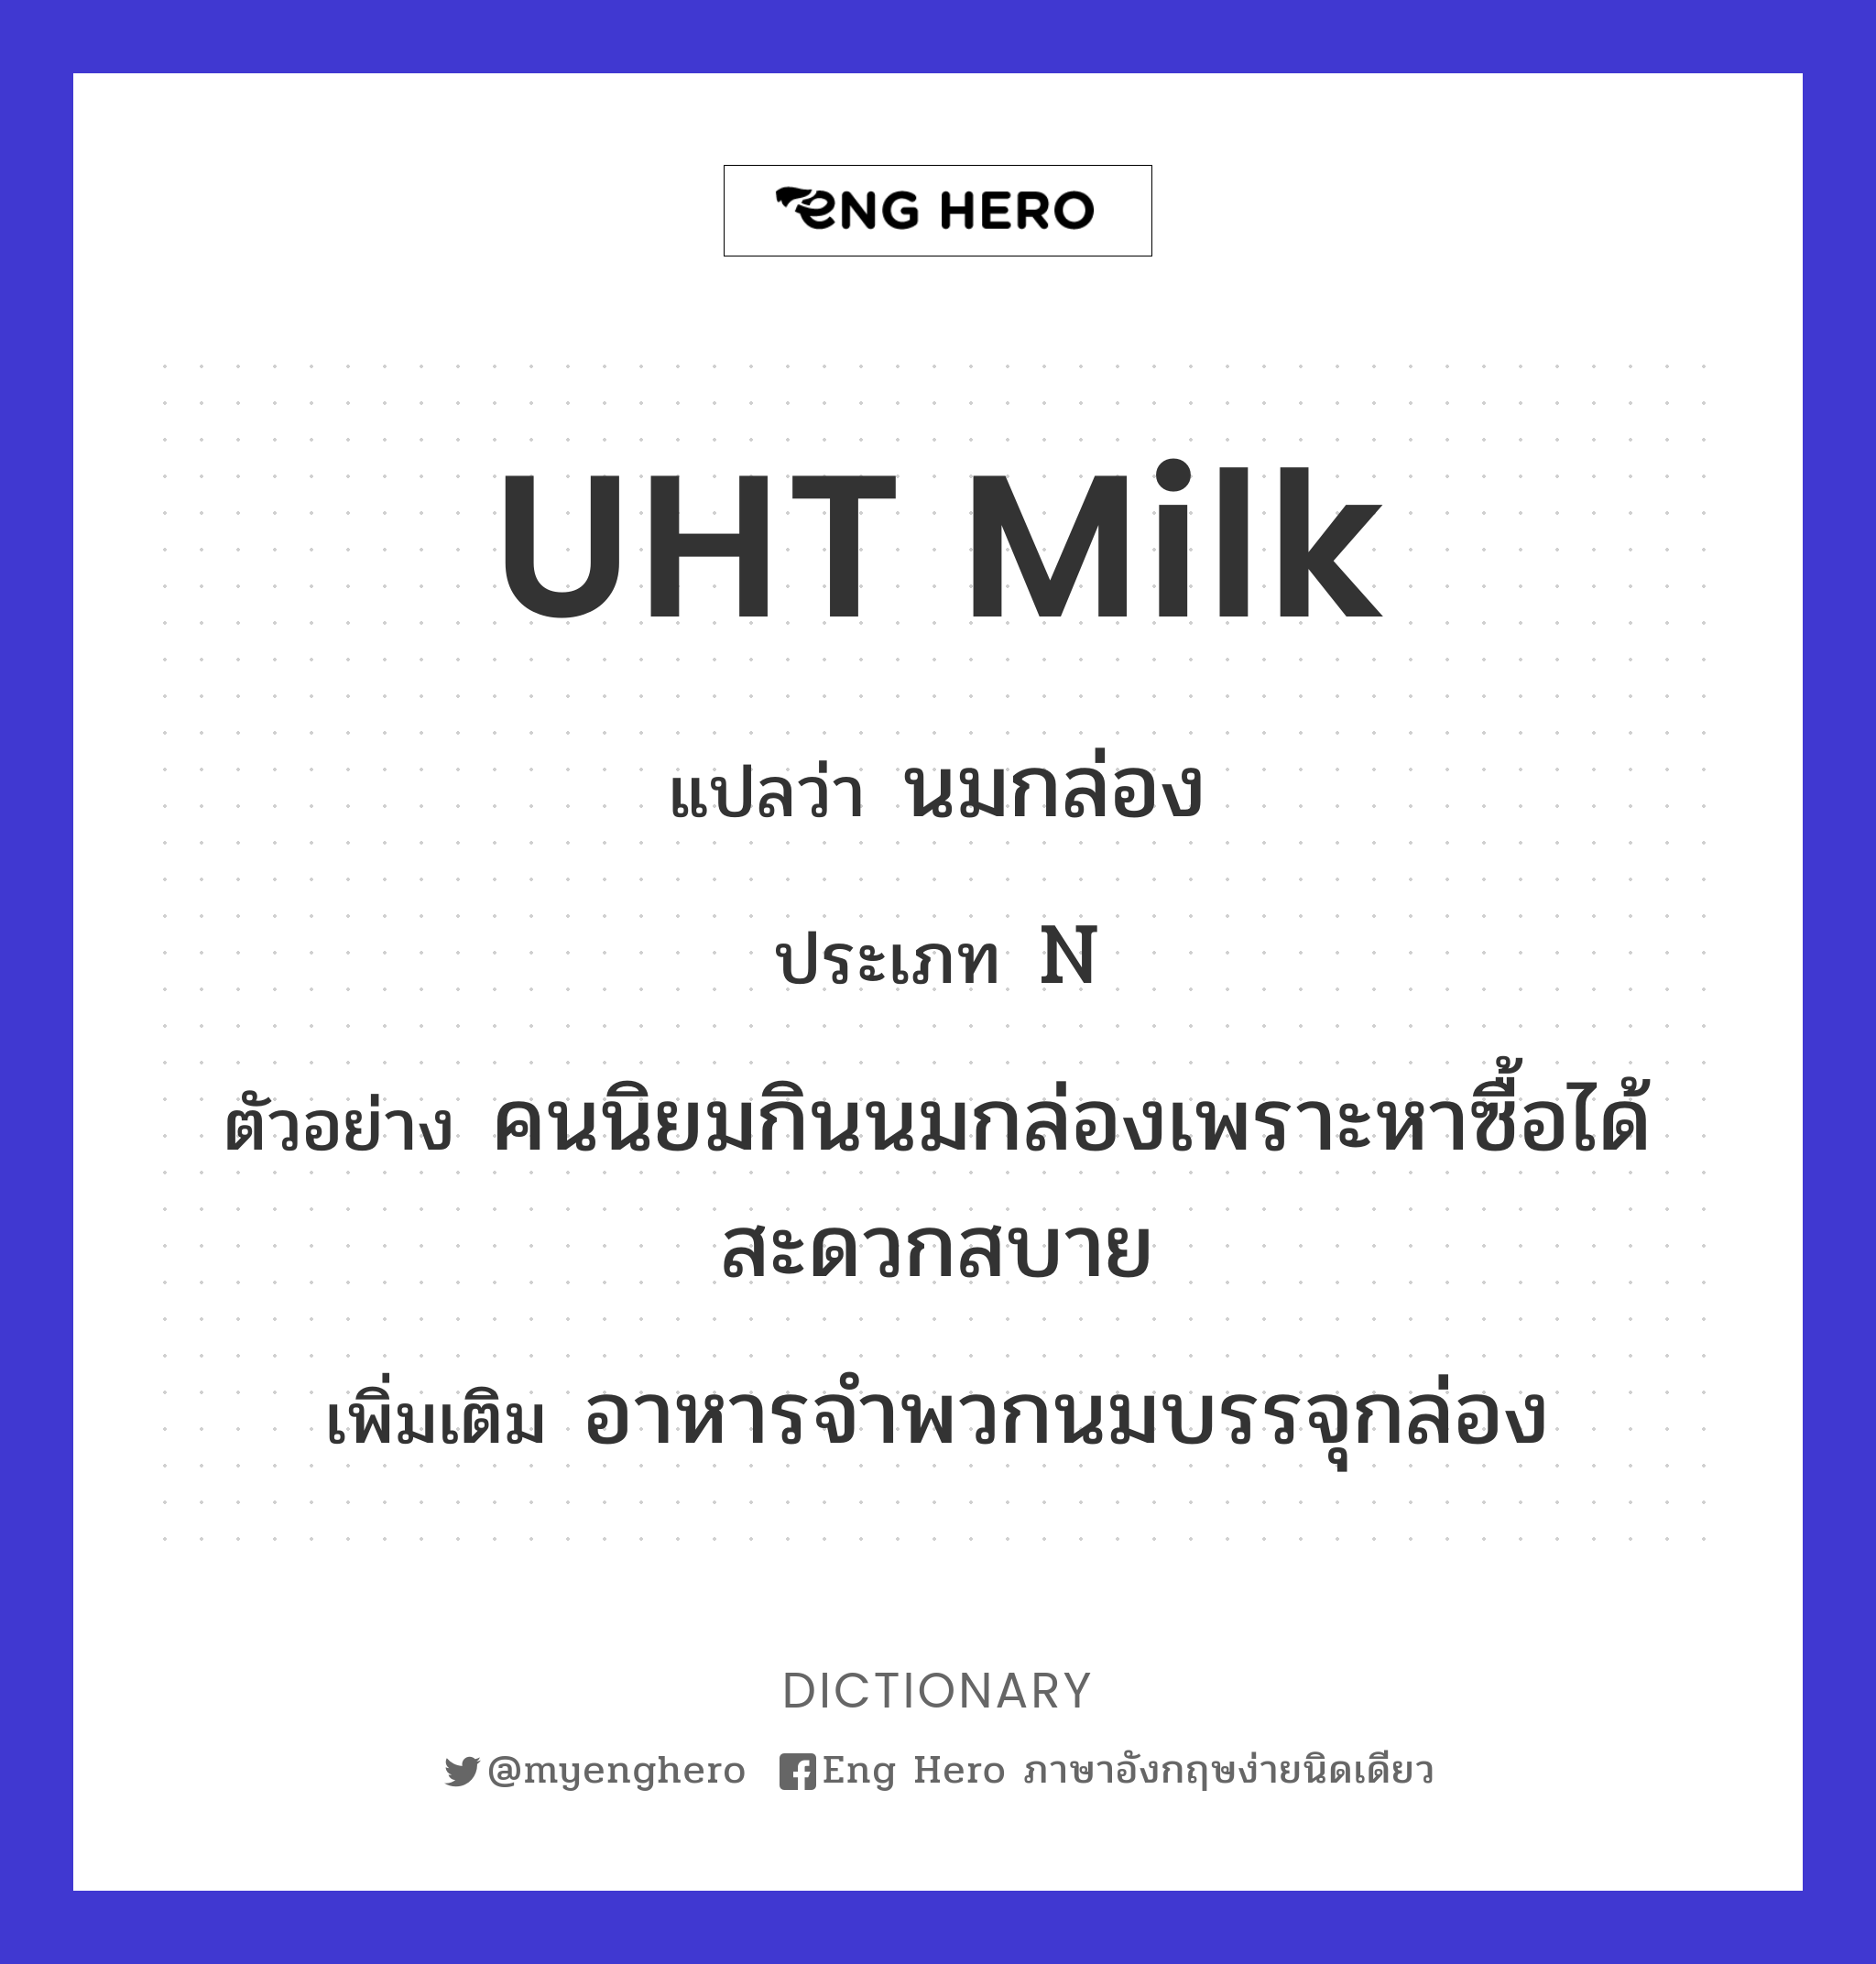 UHT milk